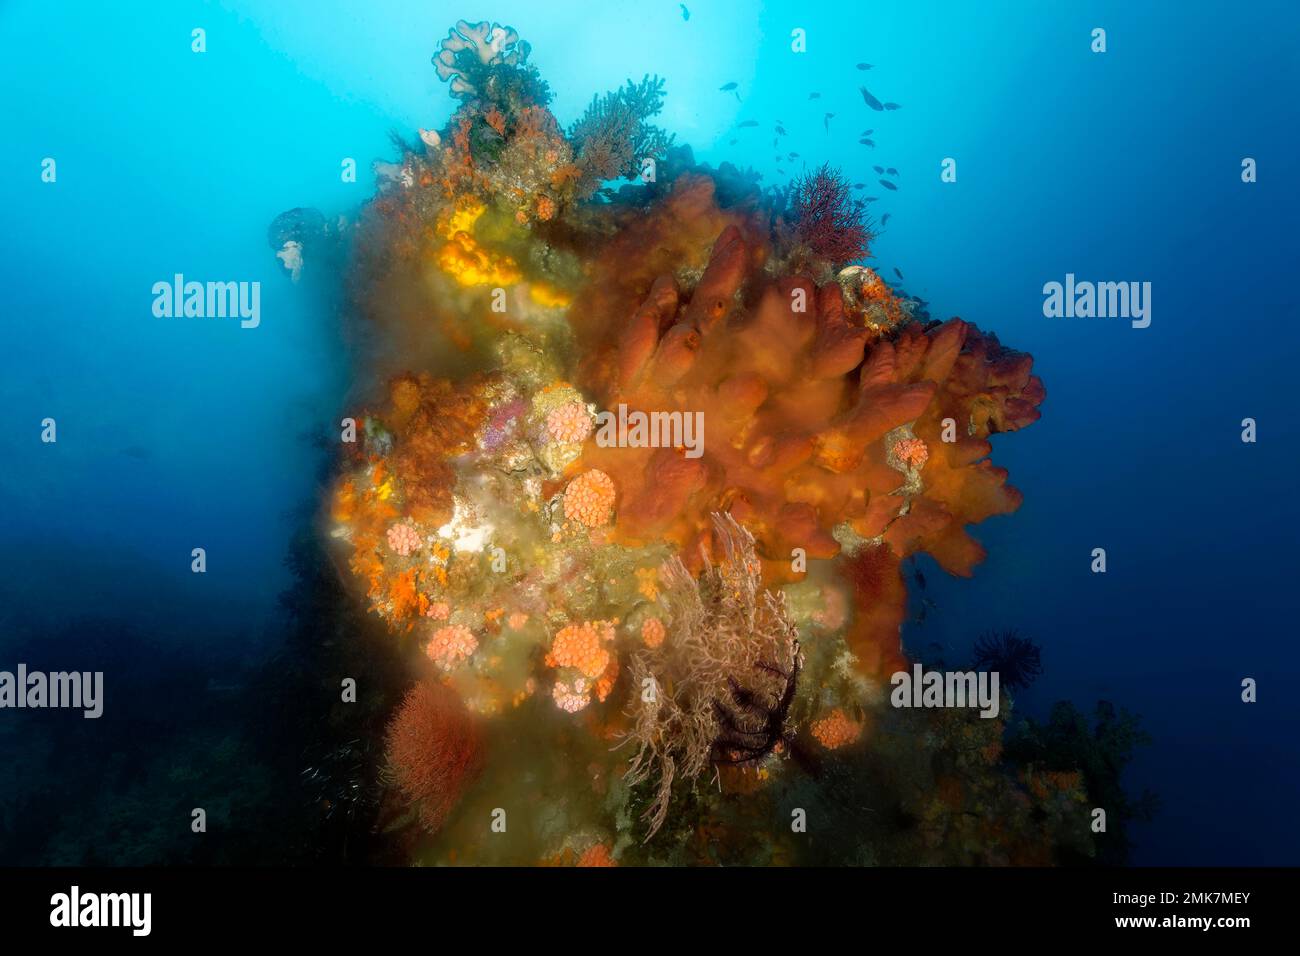 Bloc de corail avec éponge (Jaspis stellifera) marron, en bas à droite, dépôts de spemes laiteux, reproduction asexuée, Océan Pacifique, Grande barrière de corail Banque D'Images